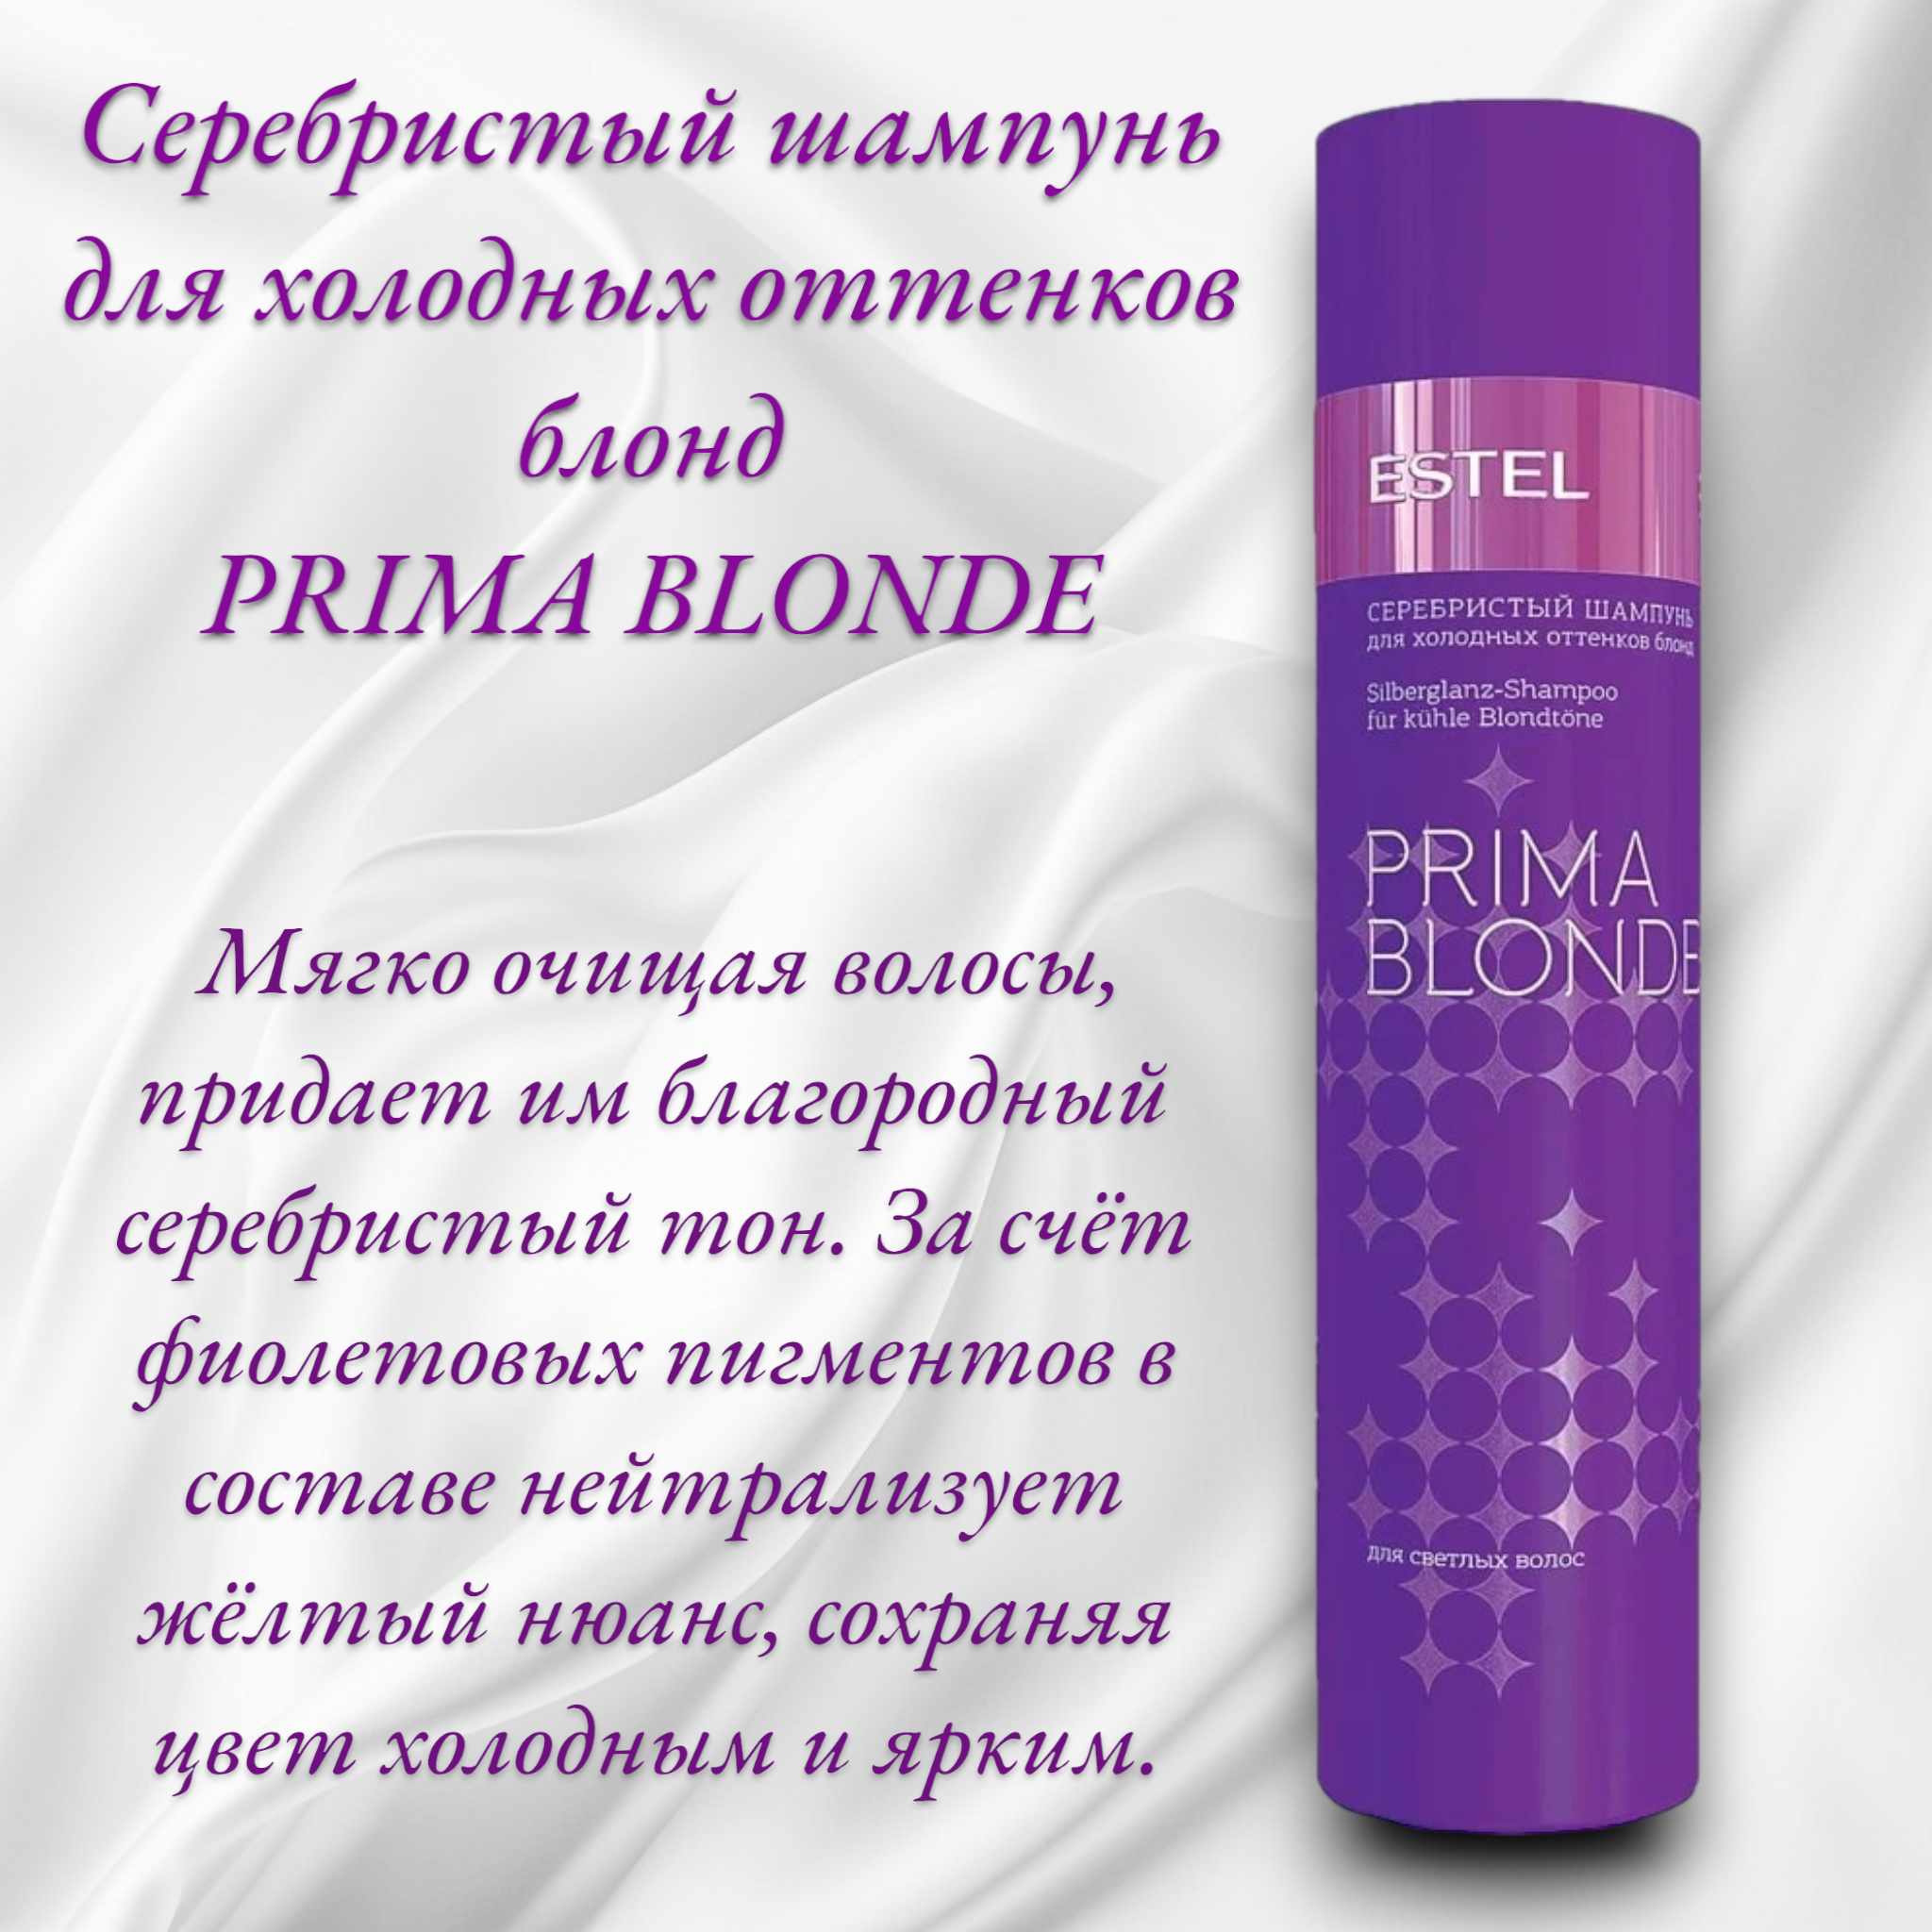 Серебристый шампунь для холодных оттенков блонд PRIMA BLONDE, Estel Professional, 250 мл.